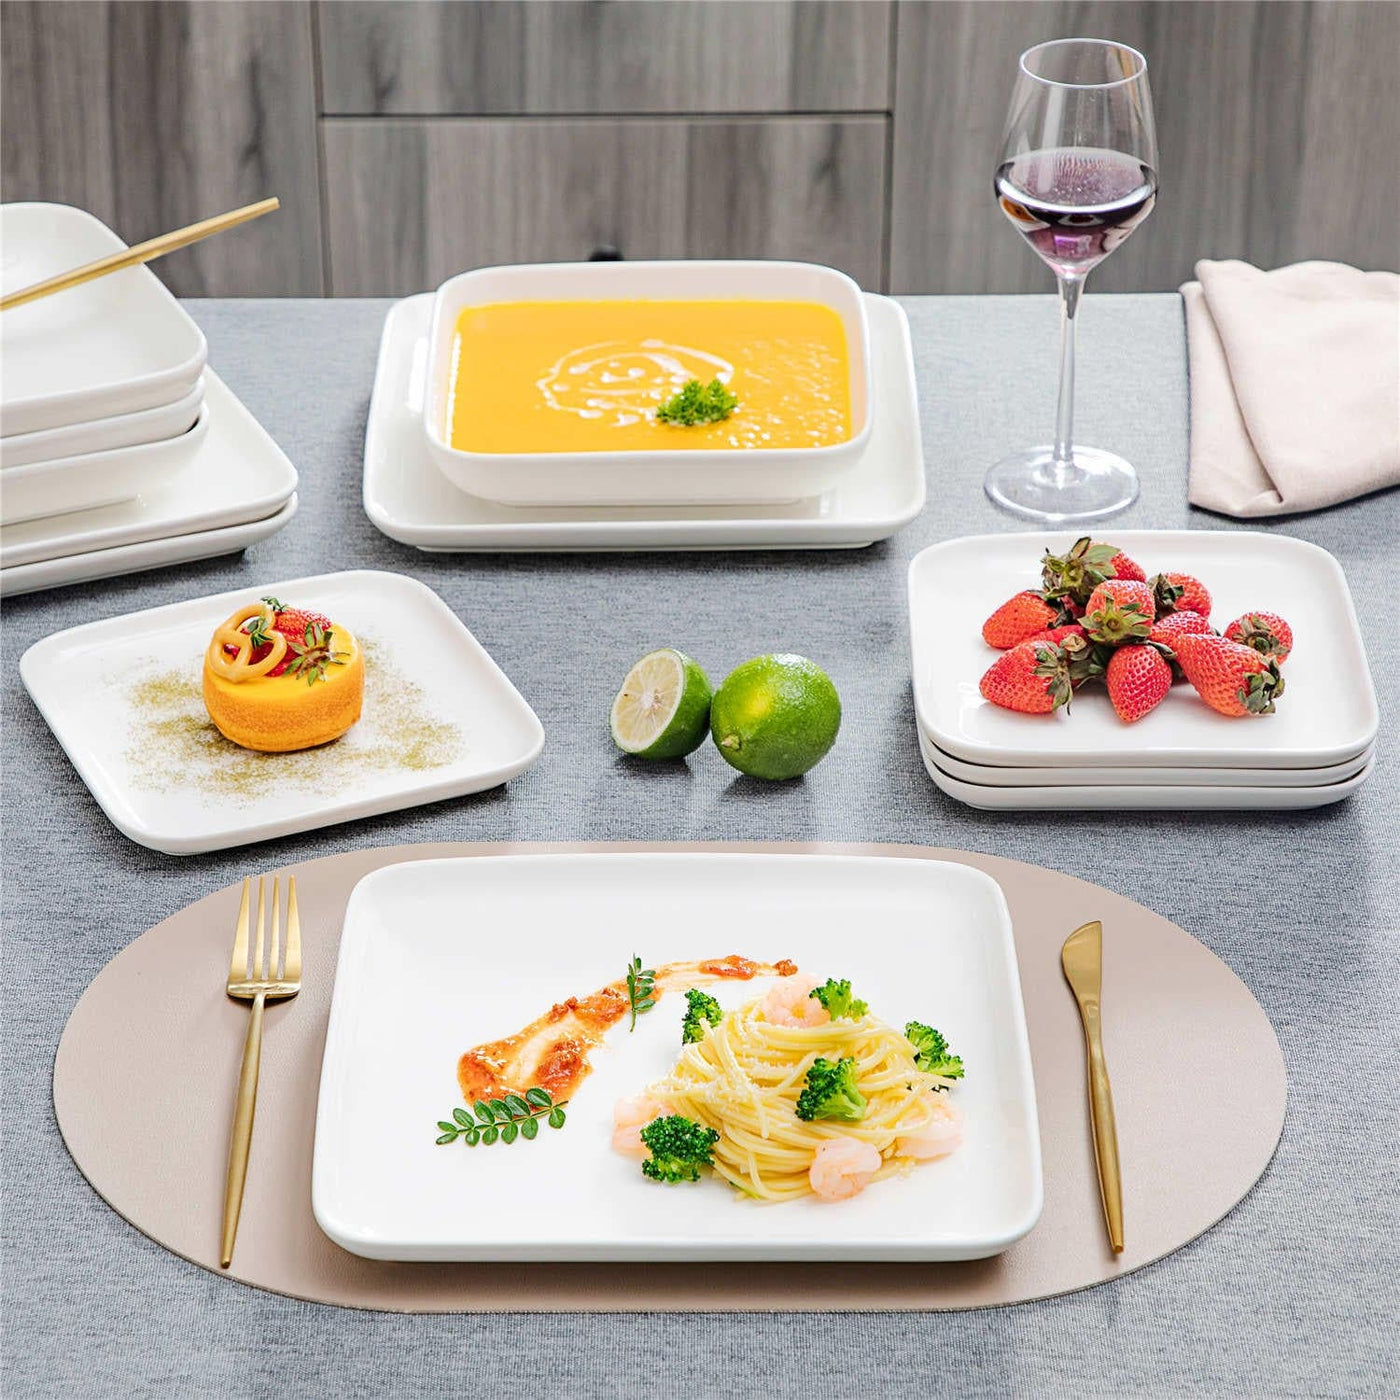 MALACASA, Series Blance, 12 pieces Dinnerware Set with 6-Piece